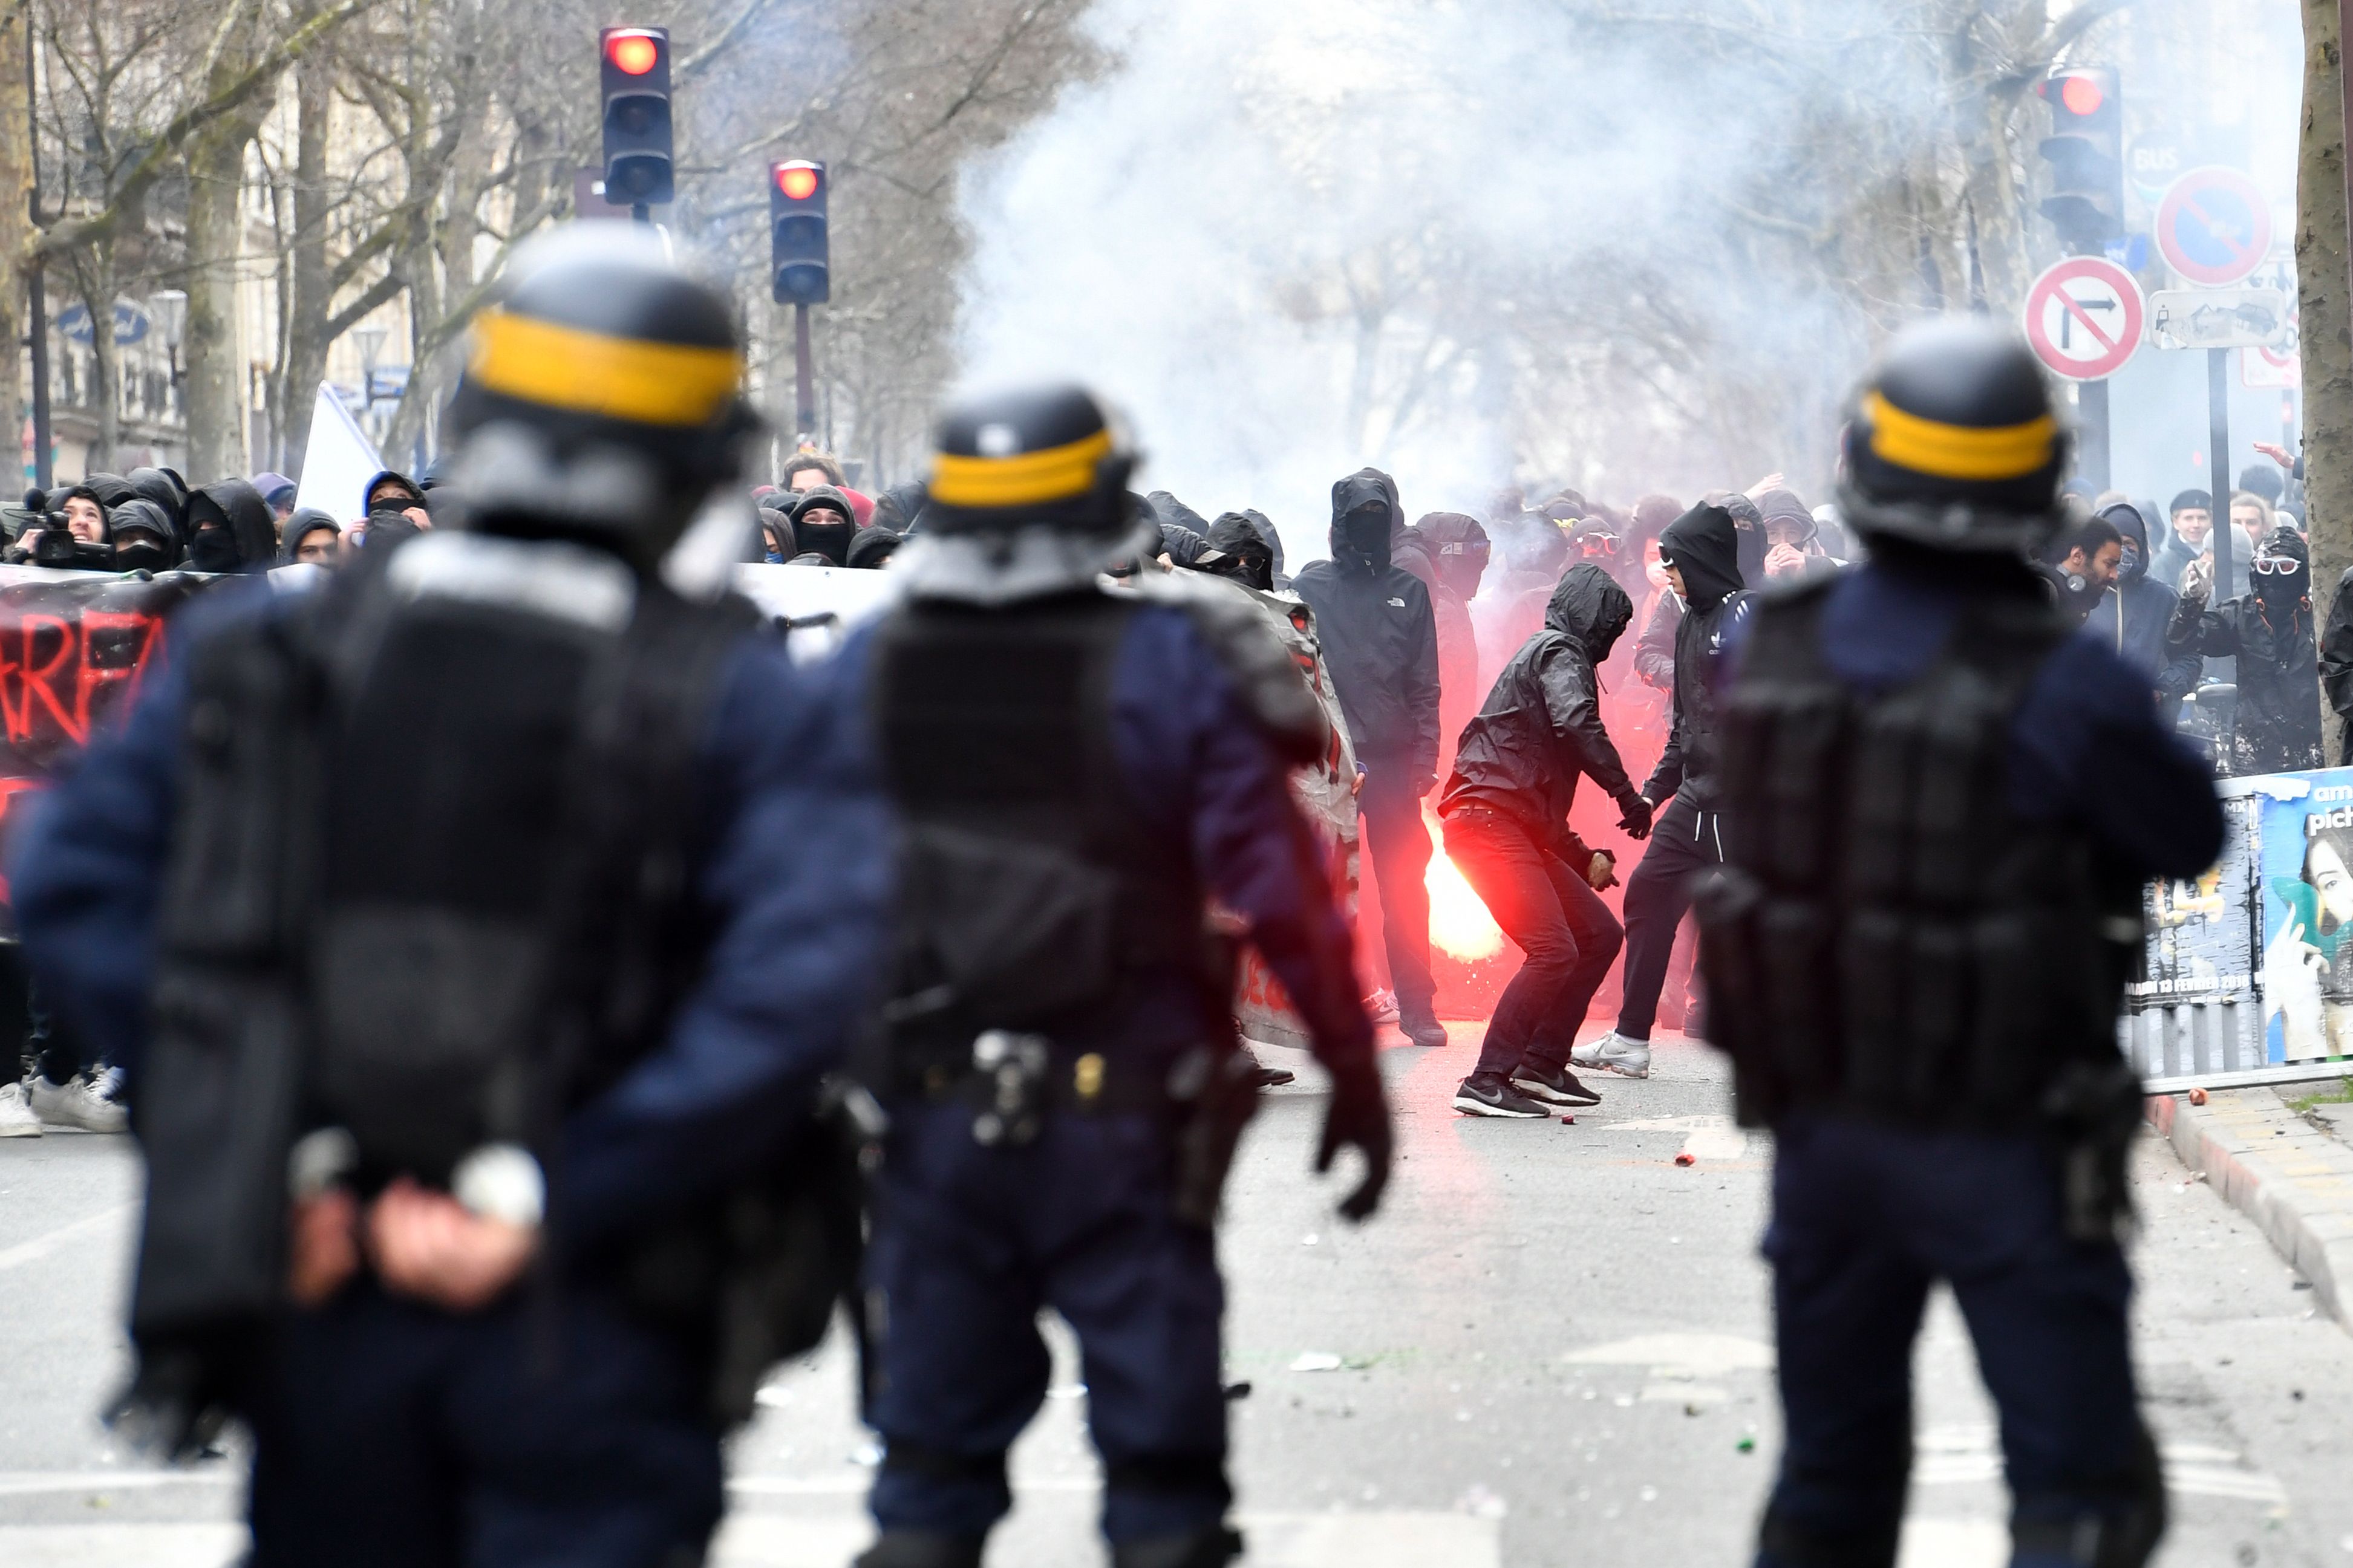 الشرطة الفرنسية تنتشر بمحيط الاحتجاجات